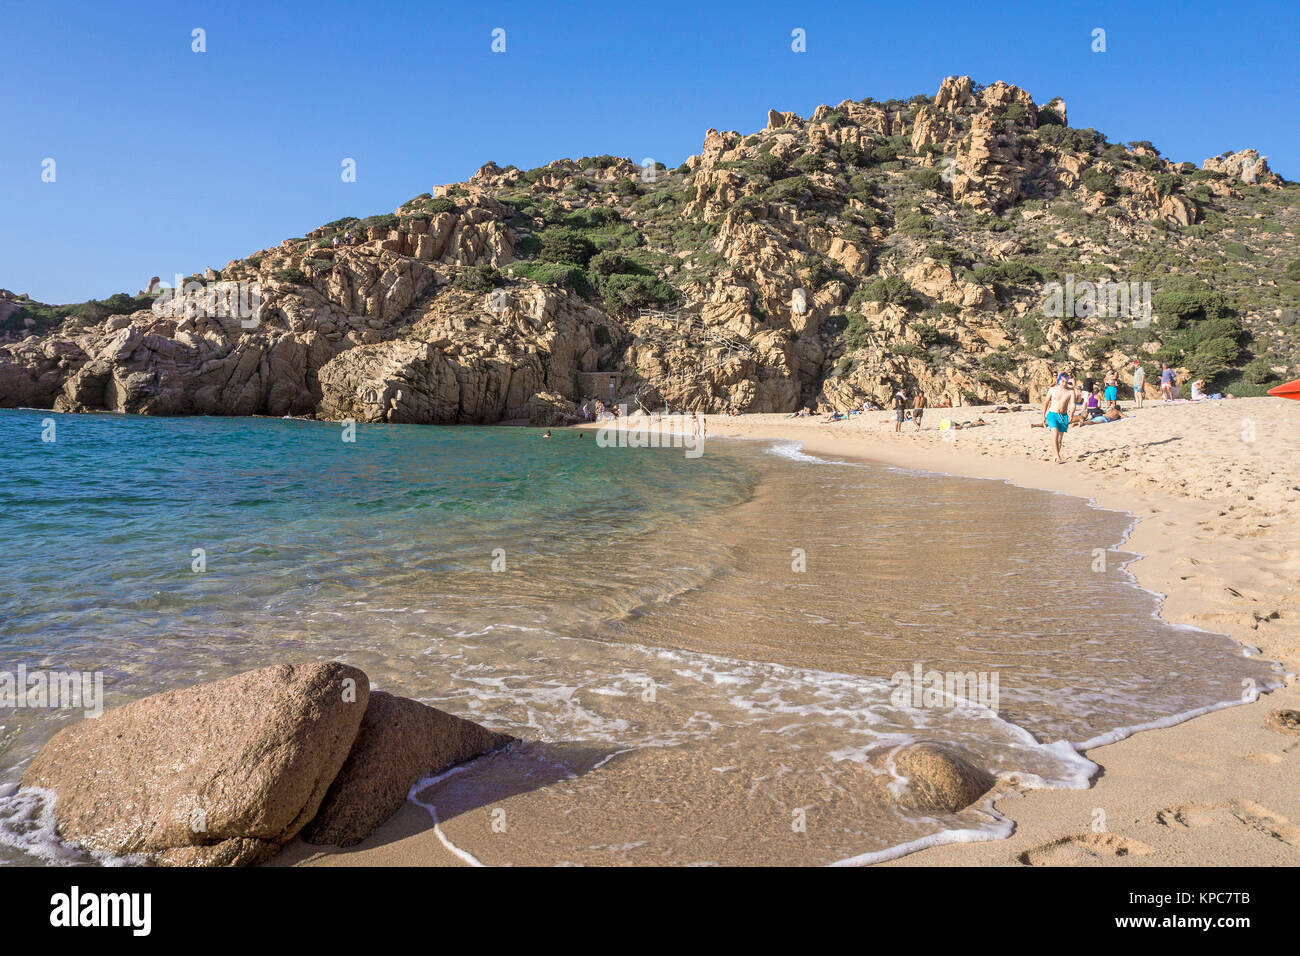 La playa de Li Cossi en Costa Paradiso, una de las más bella playa en Cerdeña, Italia, el mar Mediterráneo, Europa Foto de stock